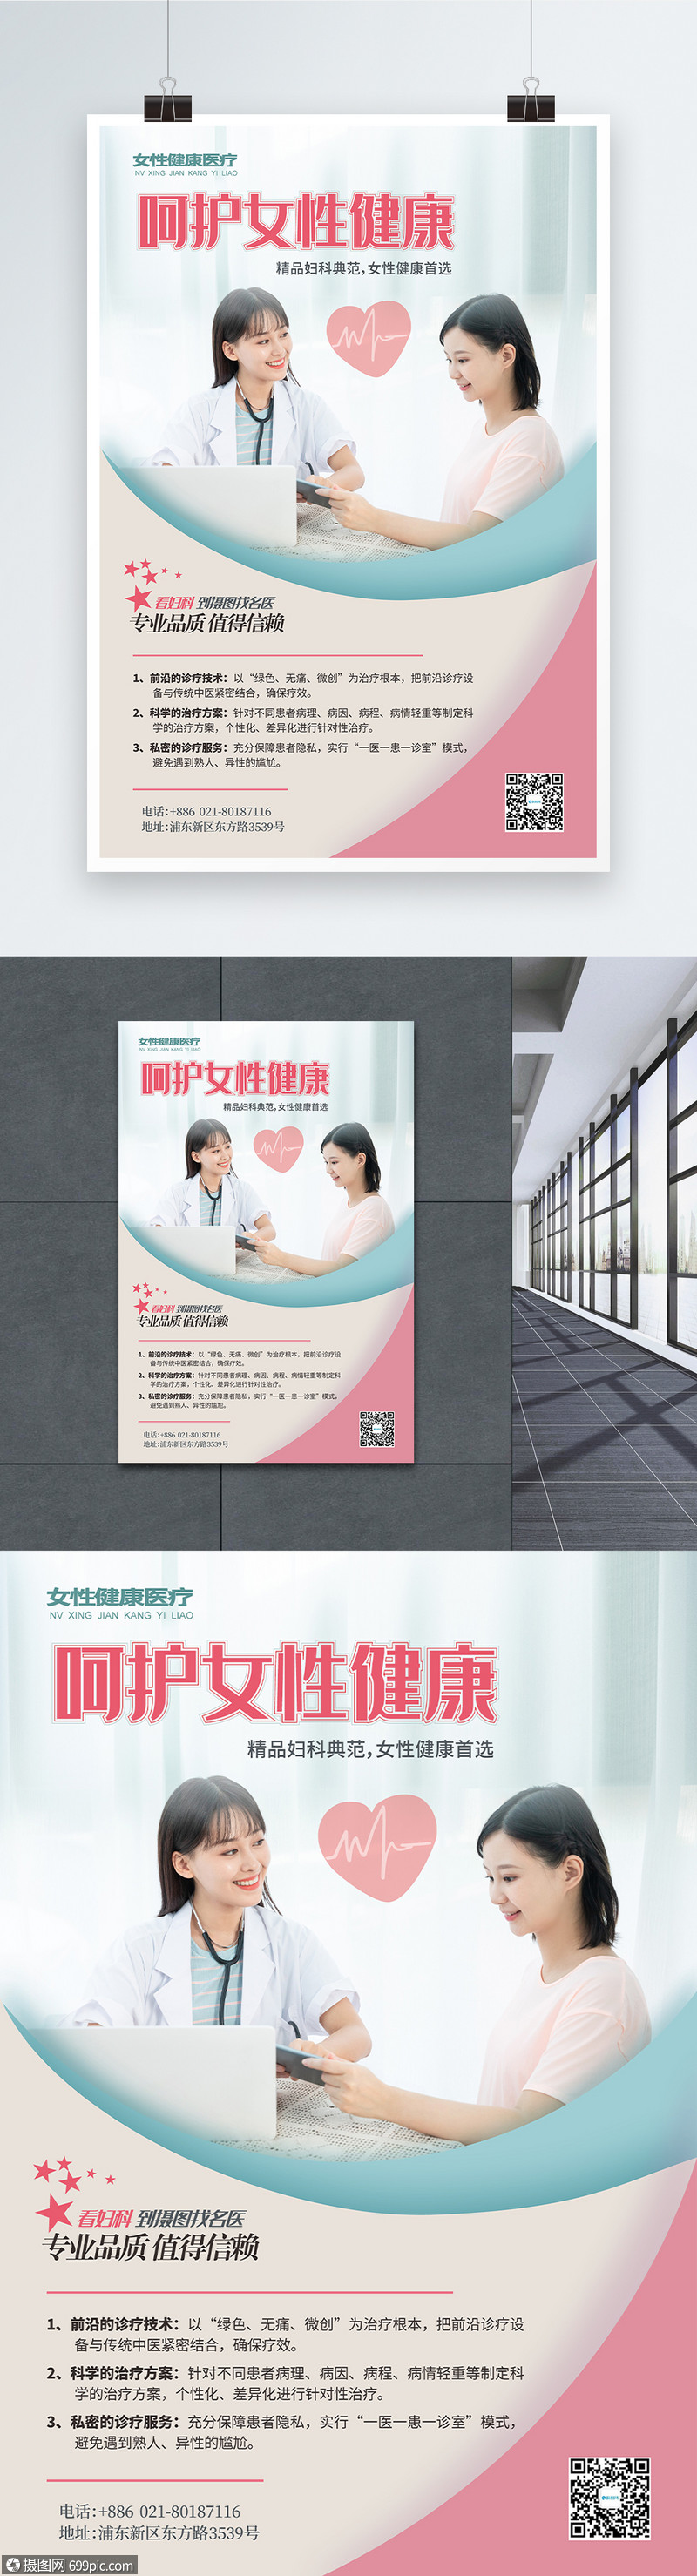 妇科专业微创医院医疗海报宣传海报海报设计